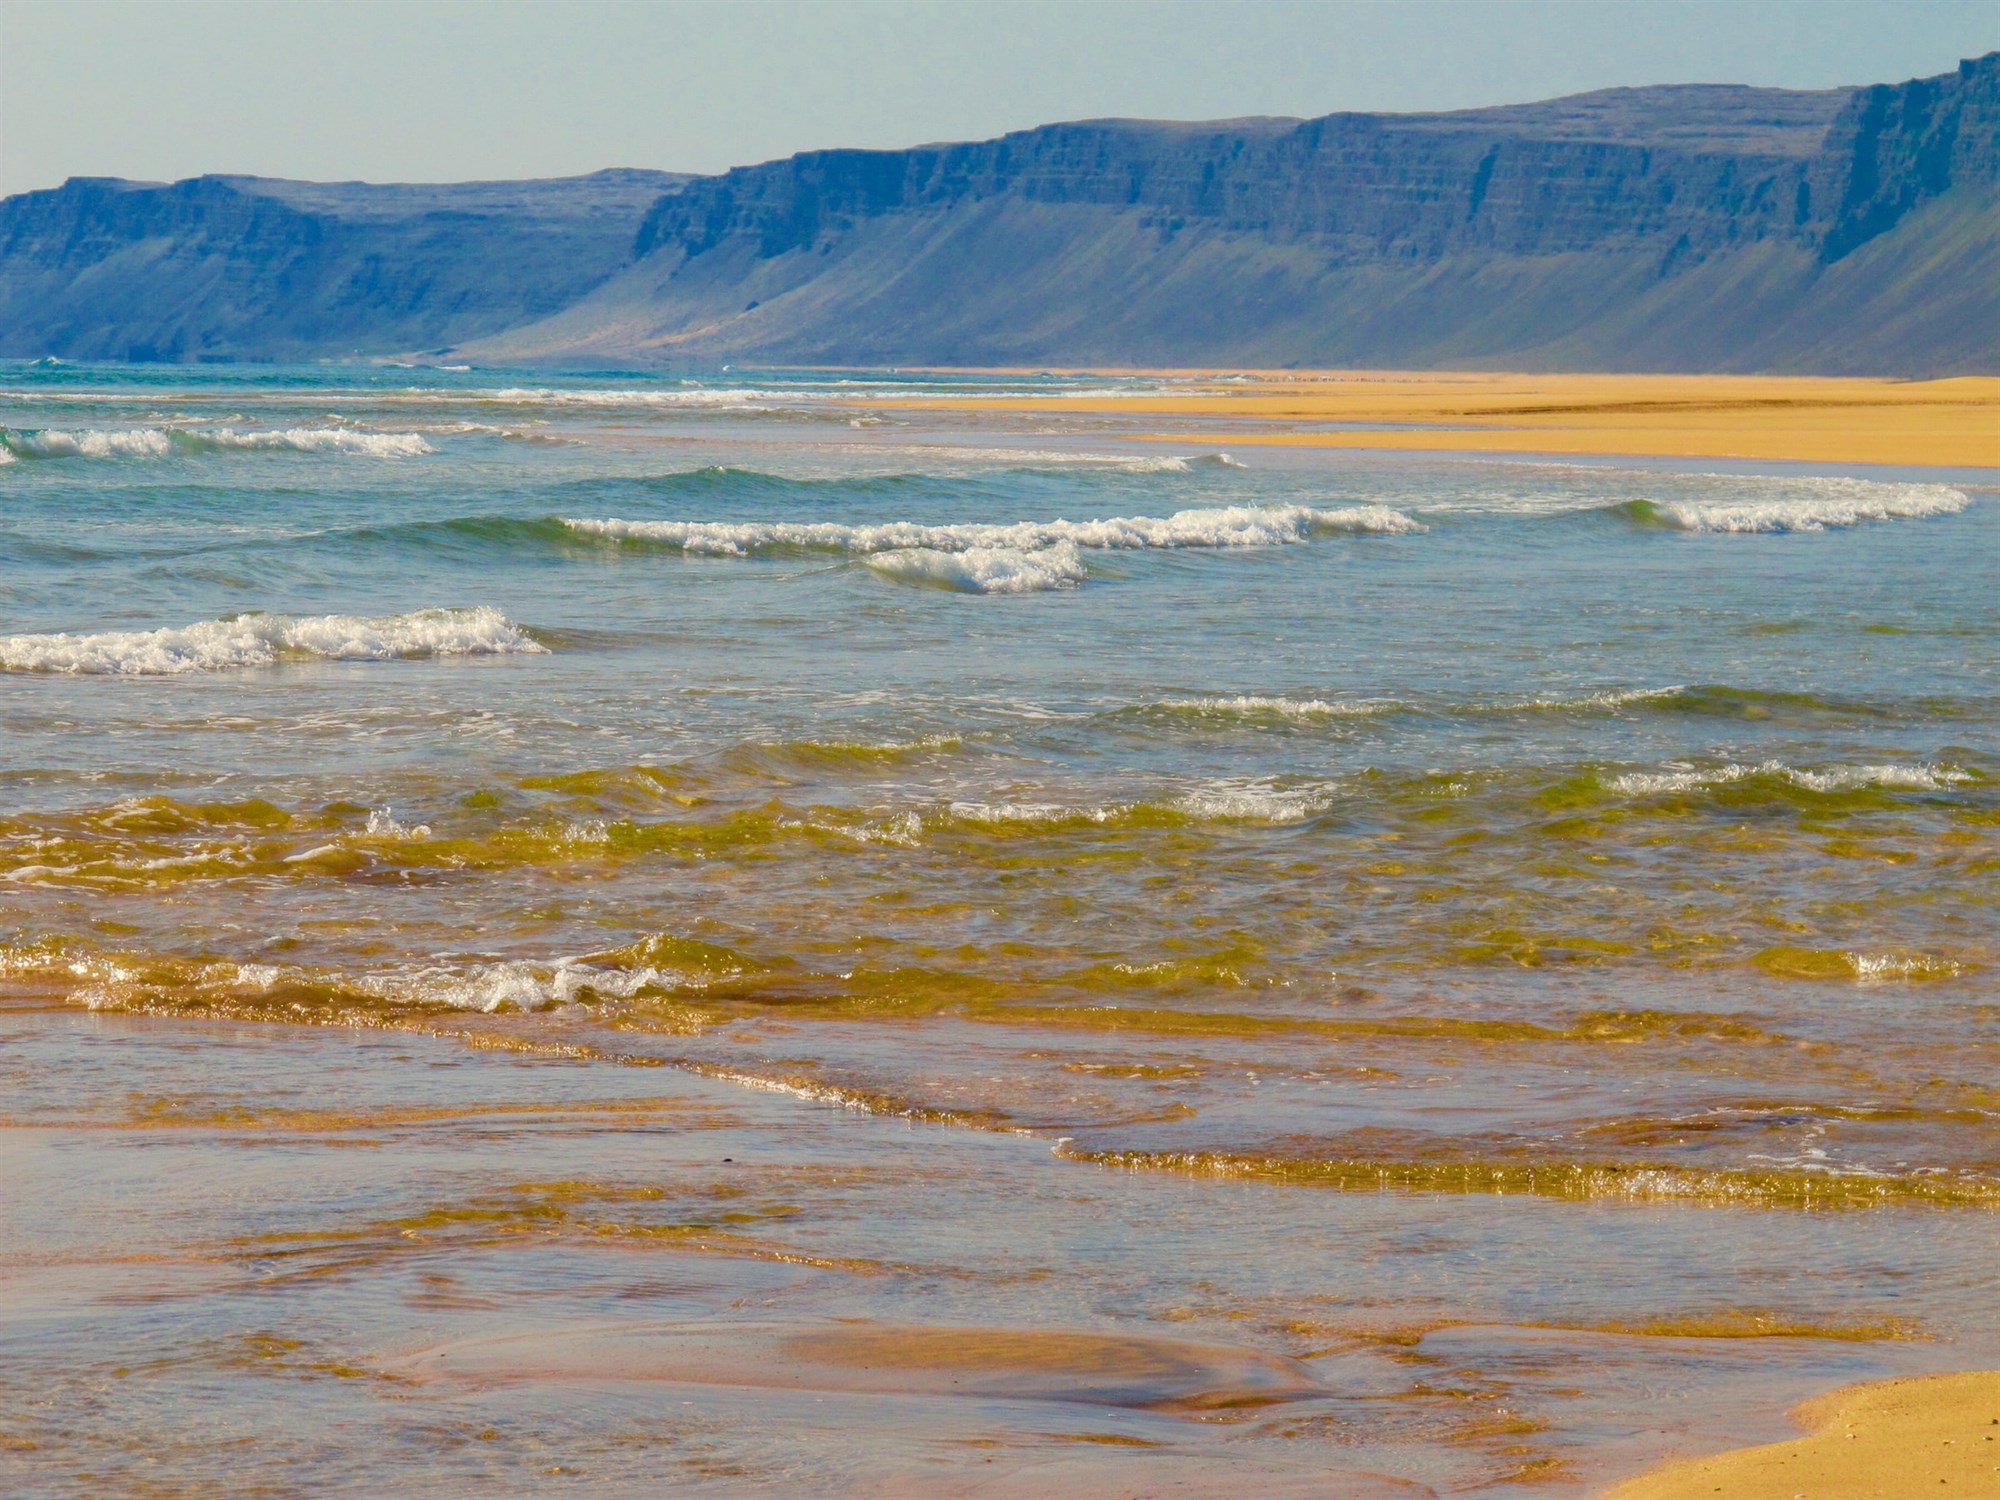 Waves crashing on Rauðasandur beach